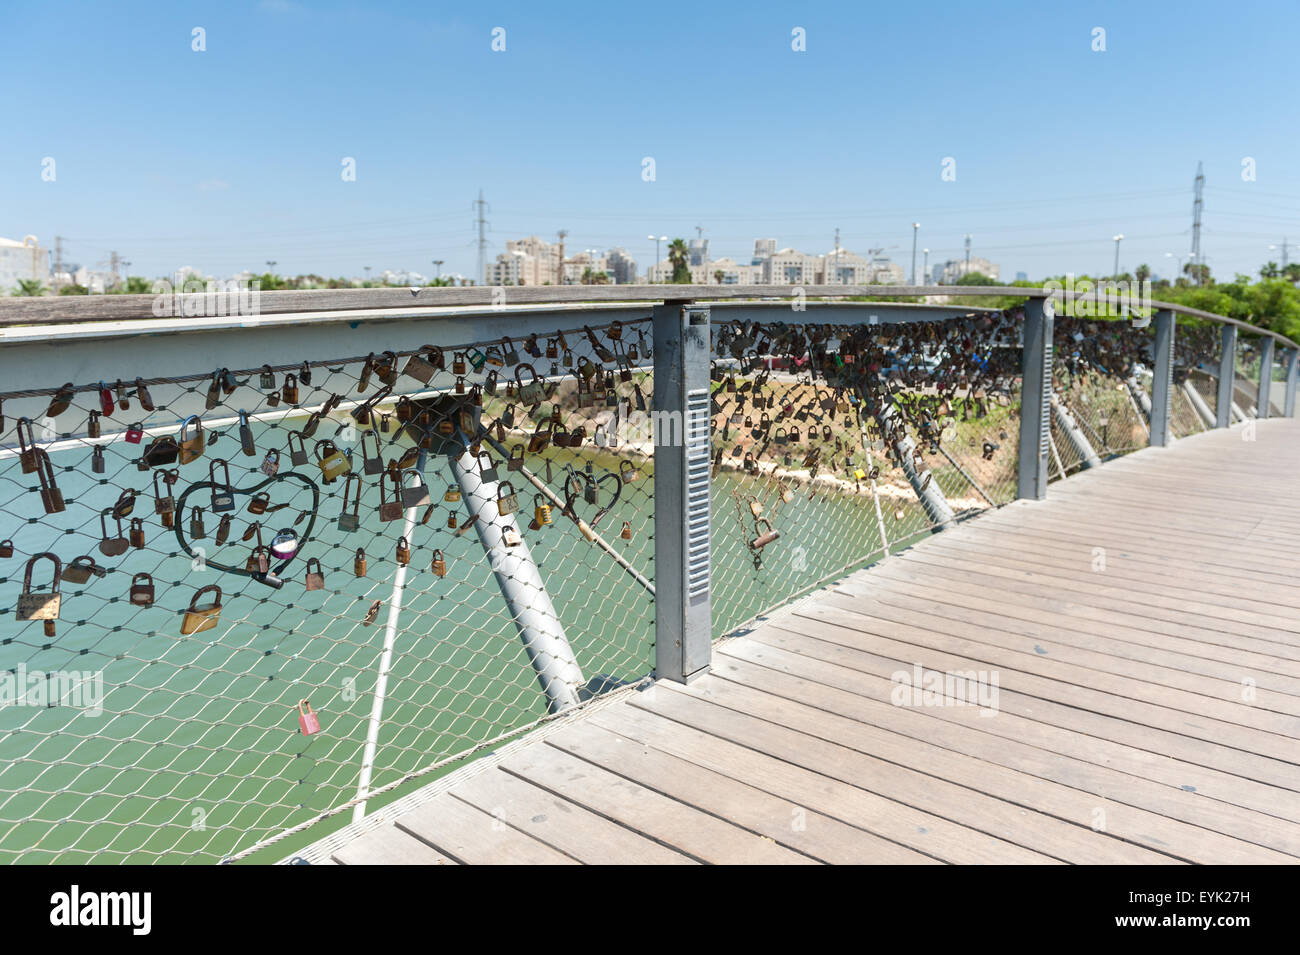 Israele, Tel Aviv, amore lock namal bridge - hataarucha Foto Stock